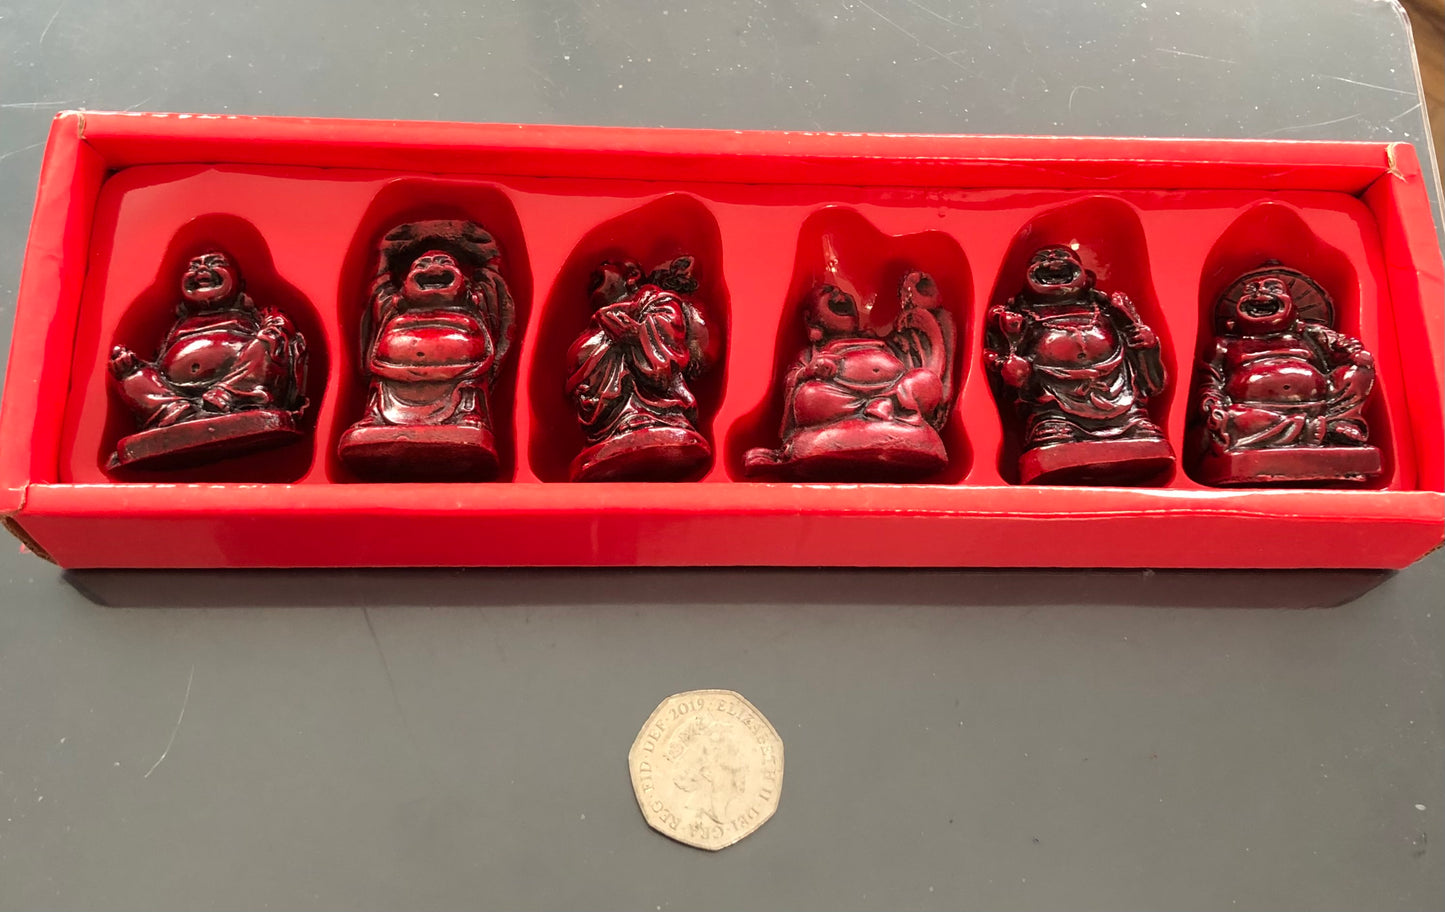 Six Happy Buddhas in a Box.